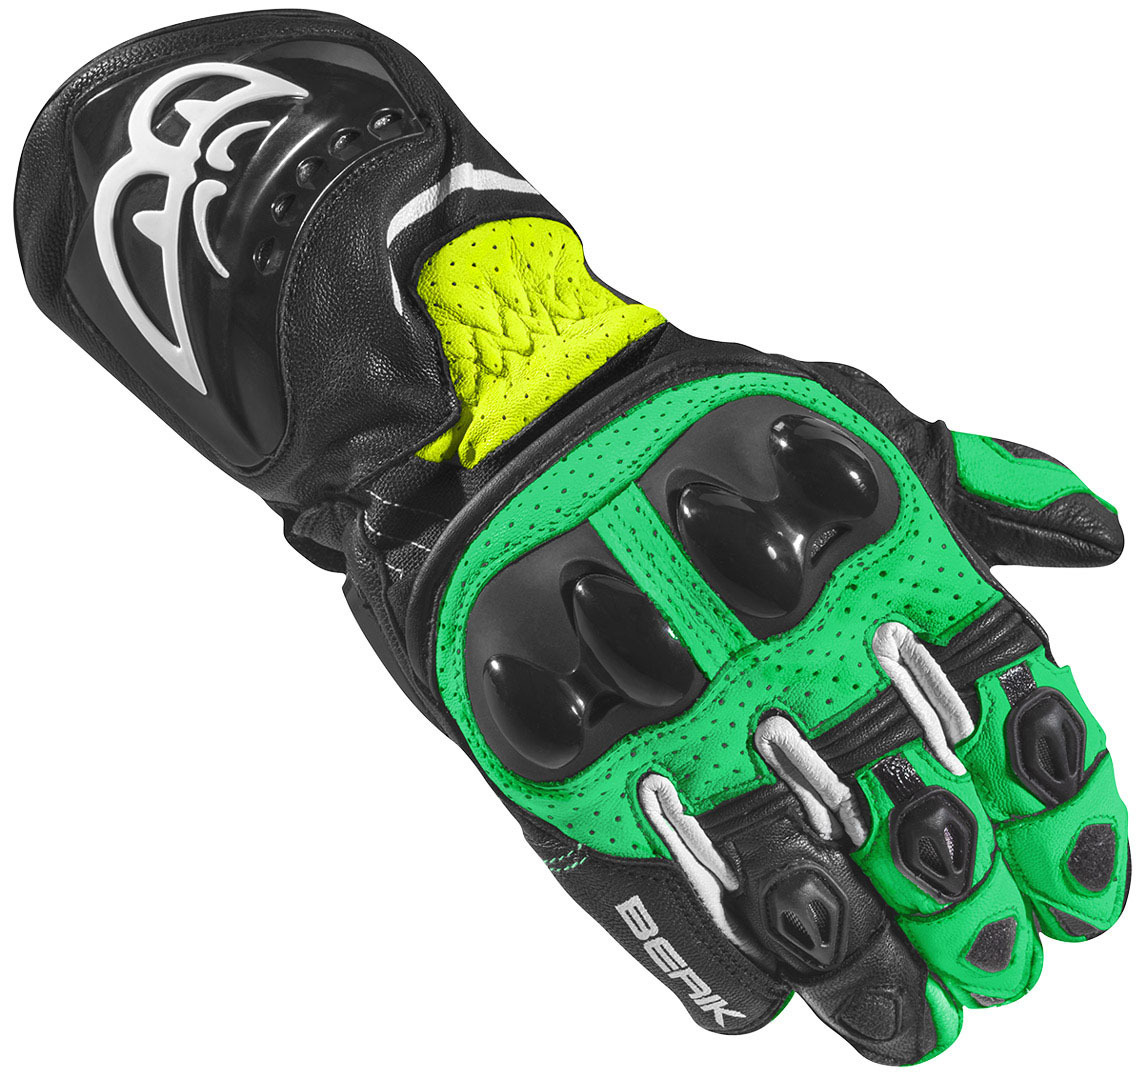 Мотоциклетные перчатки Berik Spa Evo с длинными манжетами, черный/зеленый мотоциклетные перчатки st evo berik зеленый черный